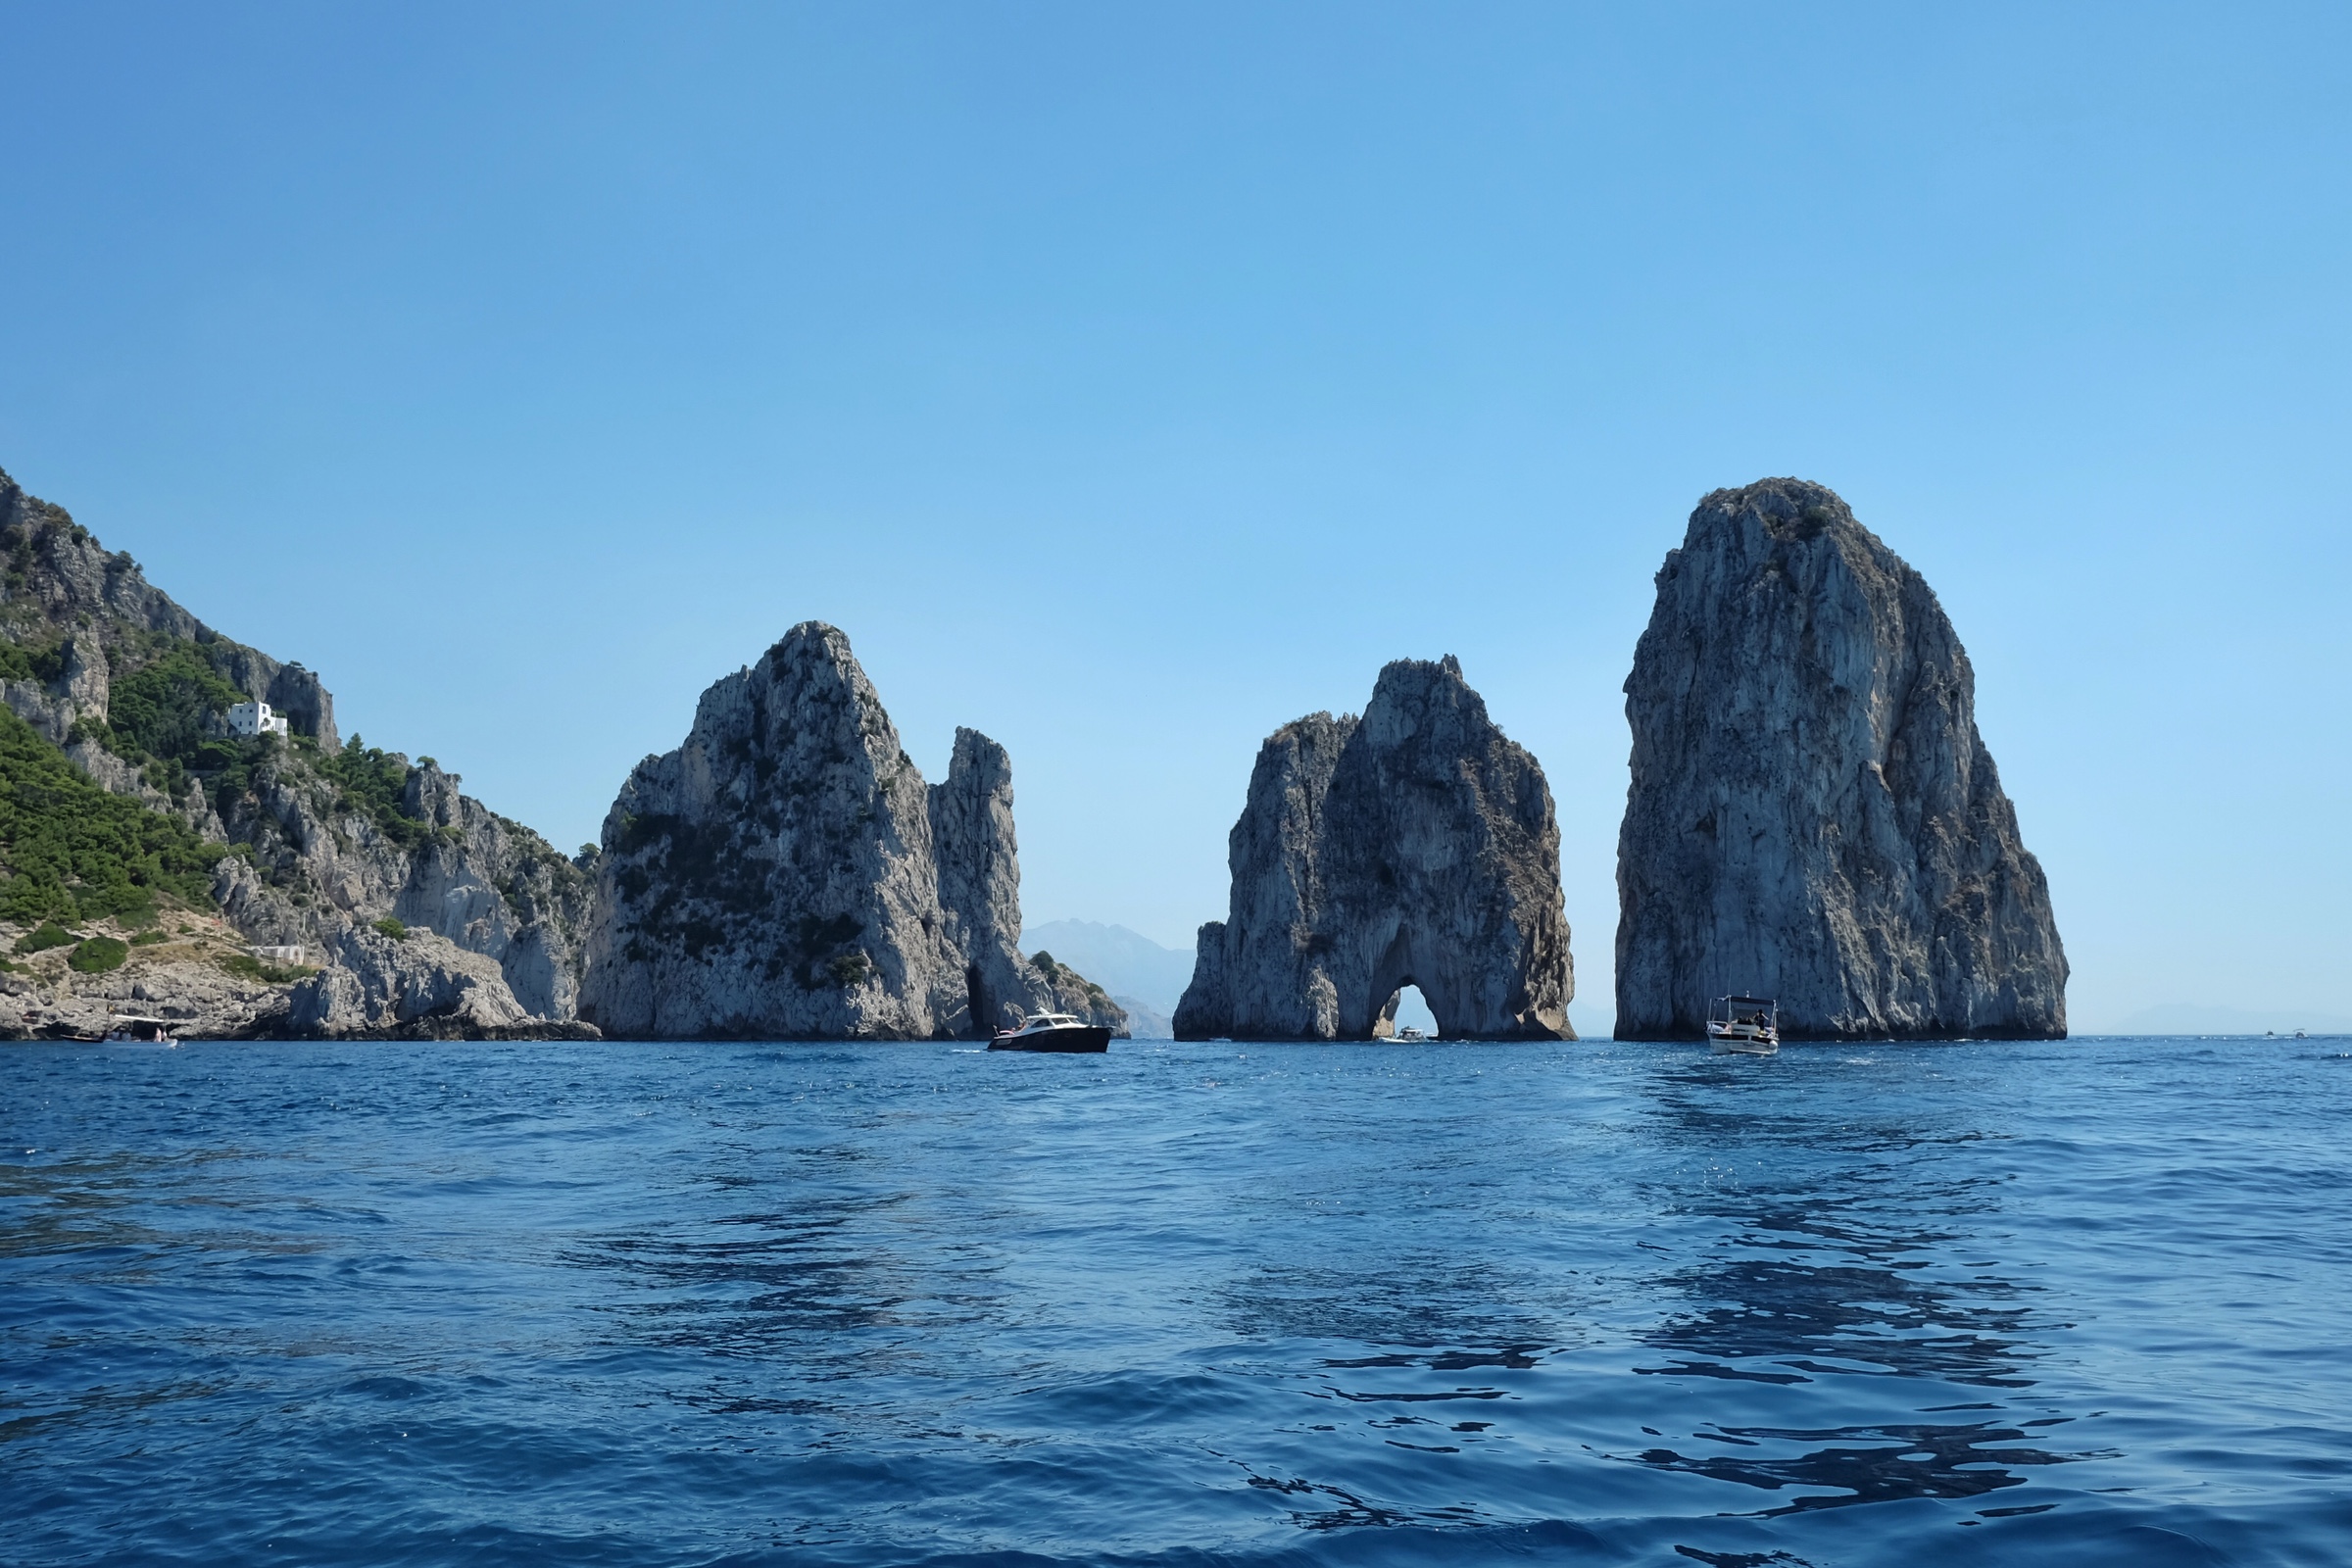 The Faraglioni are the famous three rocks off of Capri.